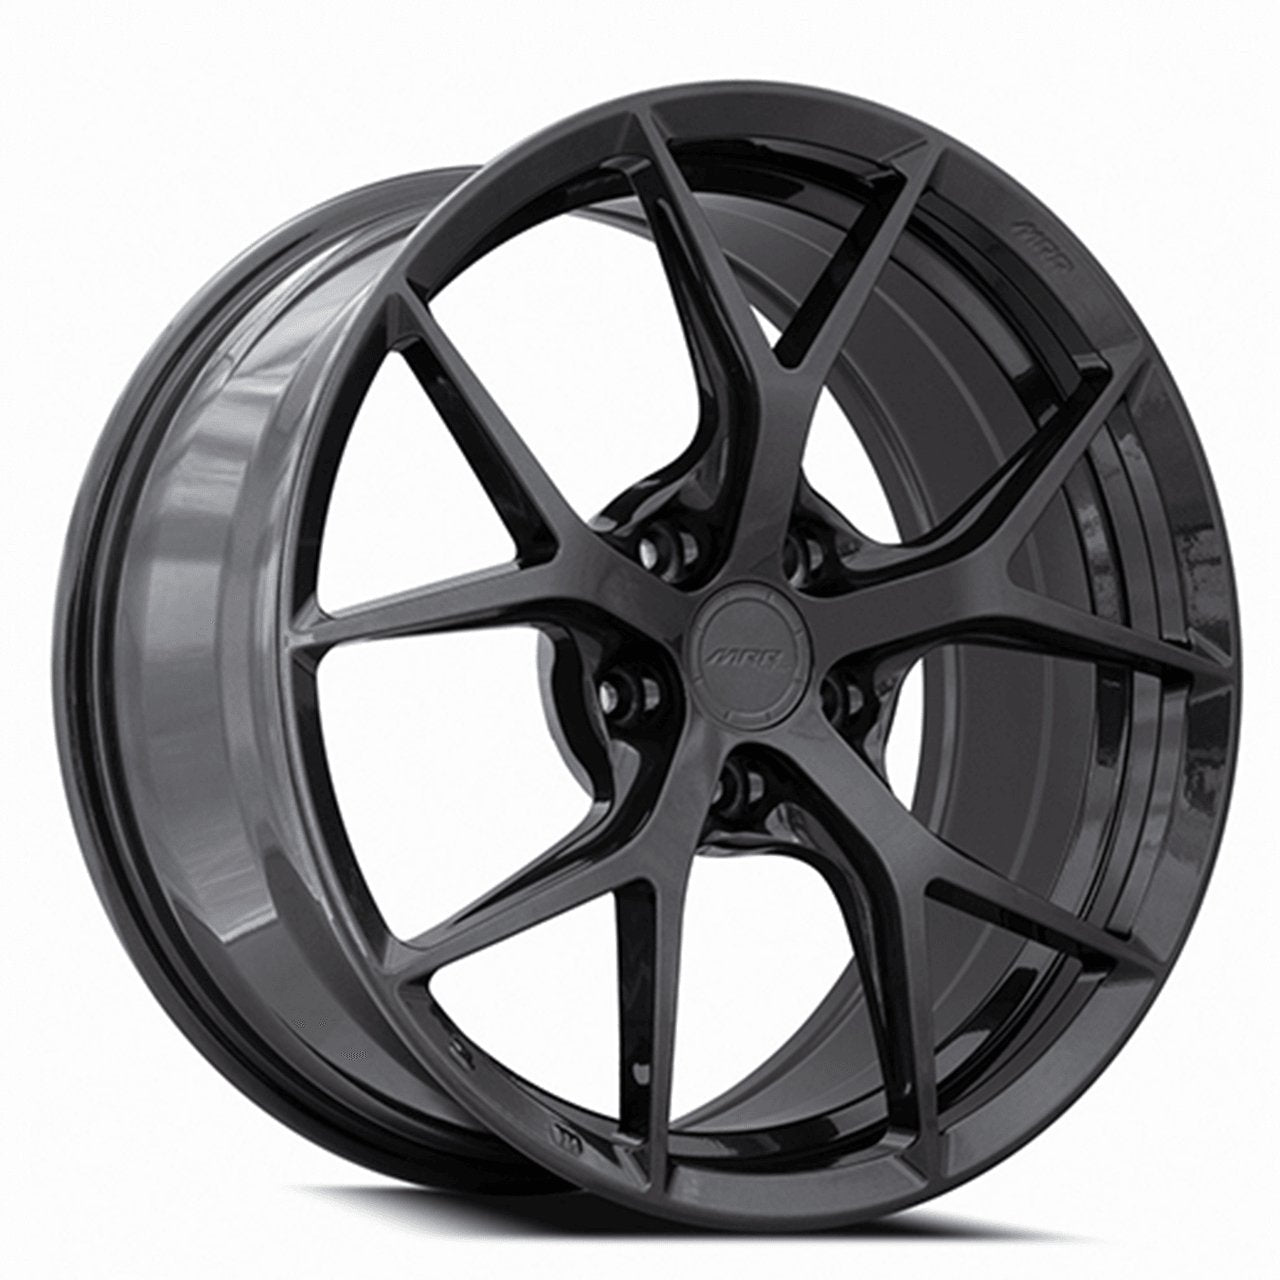 MRR FS06 wheels 20x9 / 21x12 for C8 Corvette Base / Z51 - Gem Motorsports